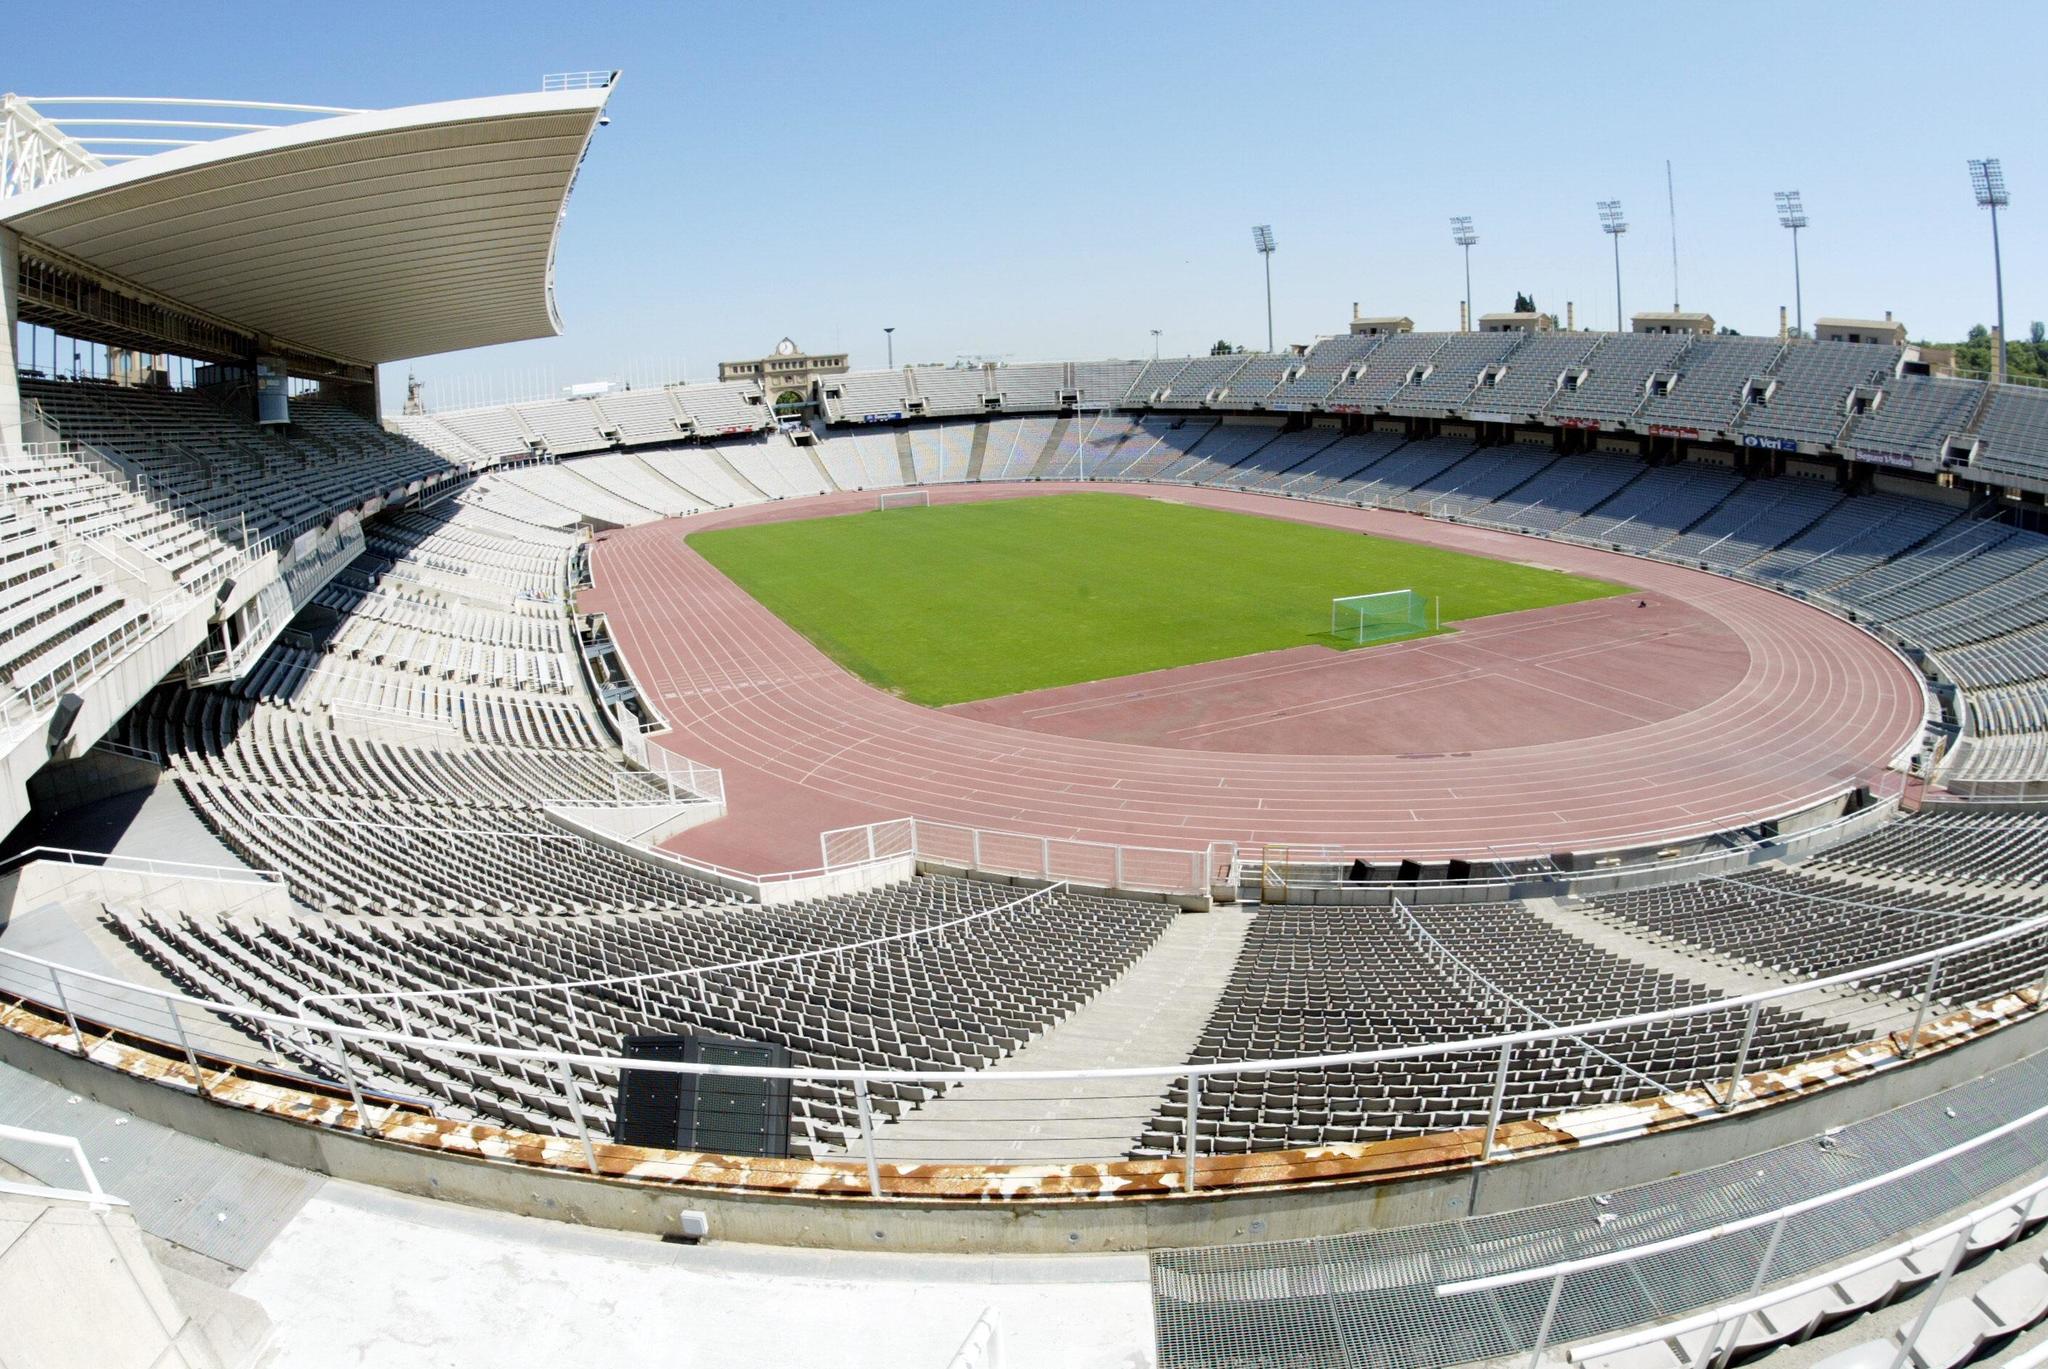 Vista panormica del estadio Llus Companys.